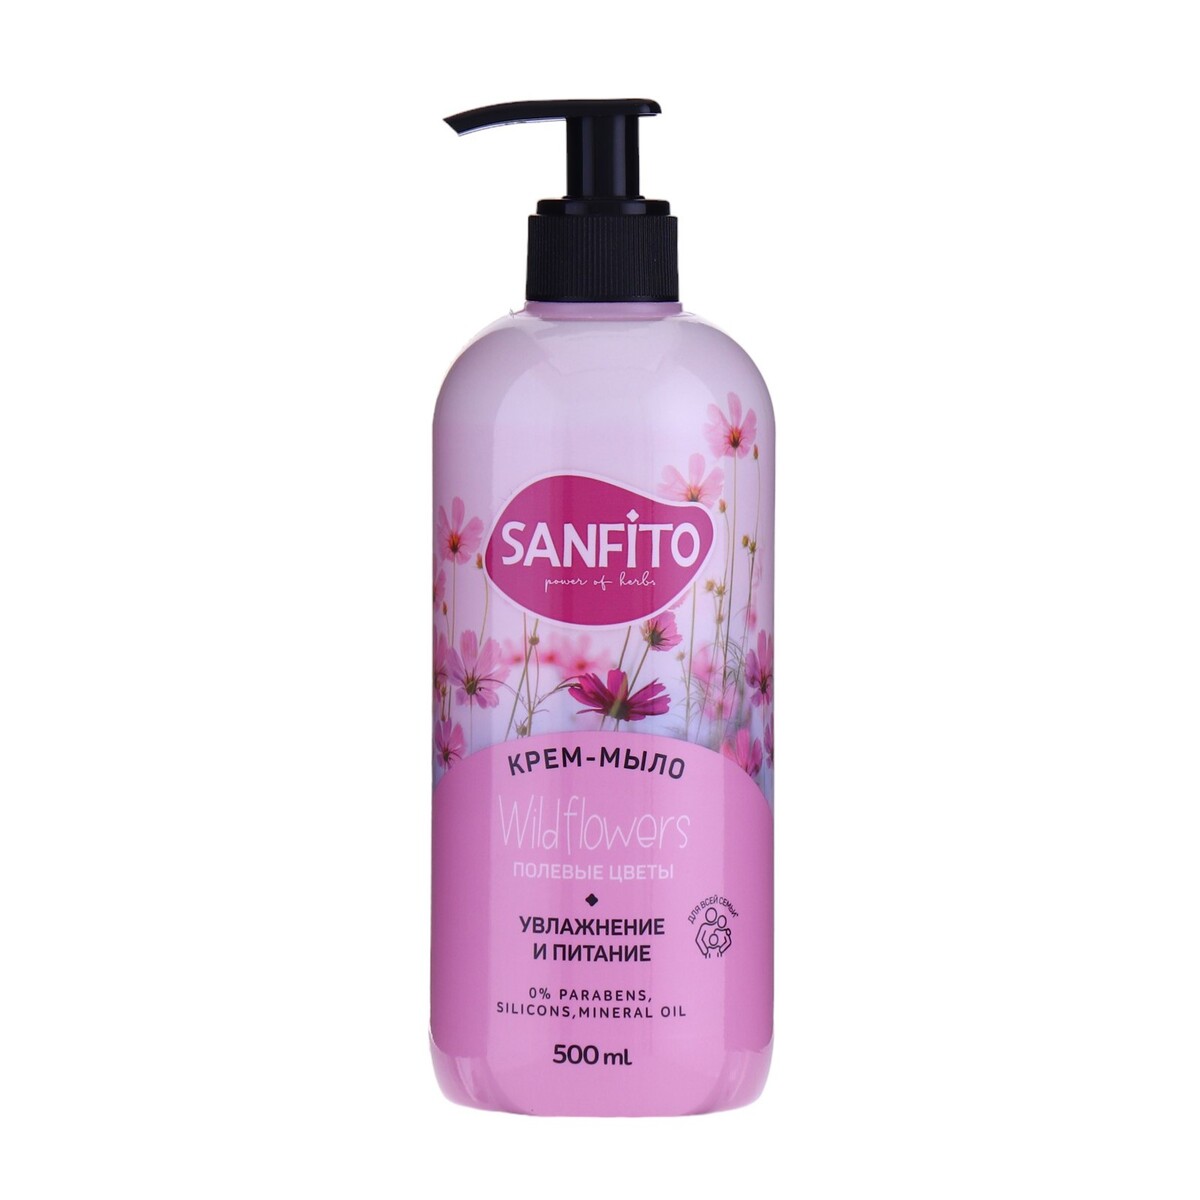 Sanfito крем-мыло sensitive, полевые цветы, 500 мл крем мыло sanfito sensitive лавандовые поля 1 л